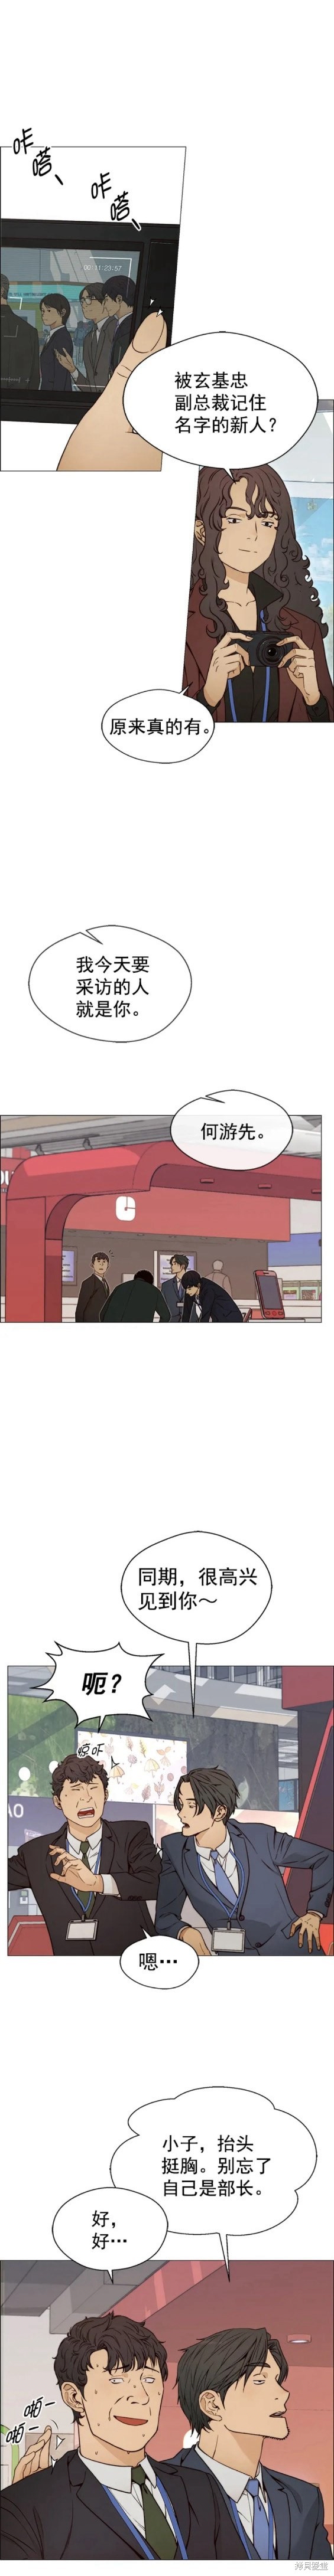 男子汉漫画,第119话11图